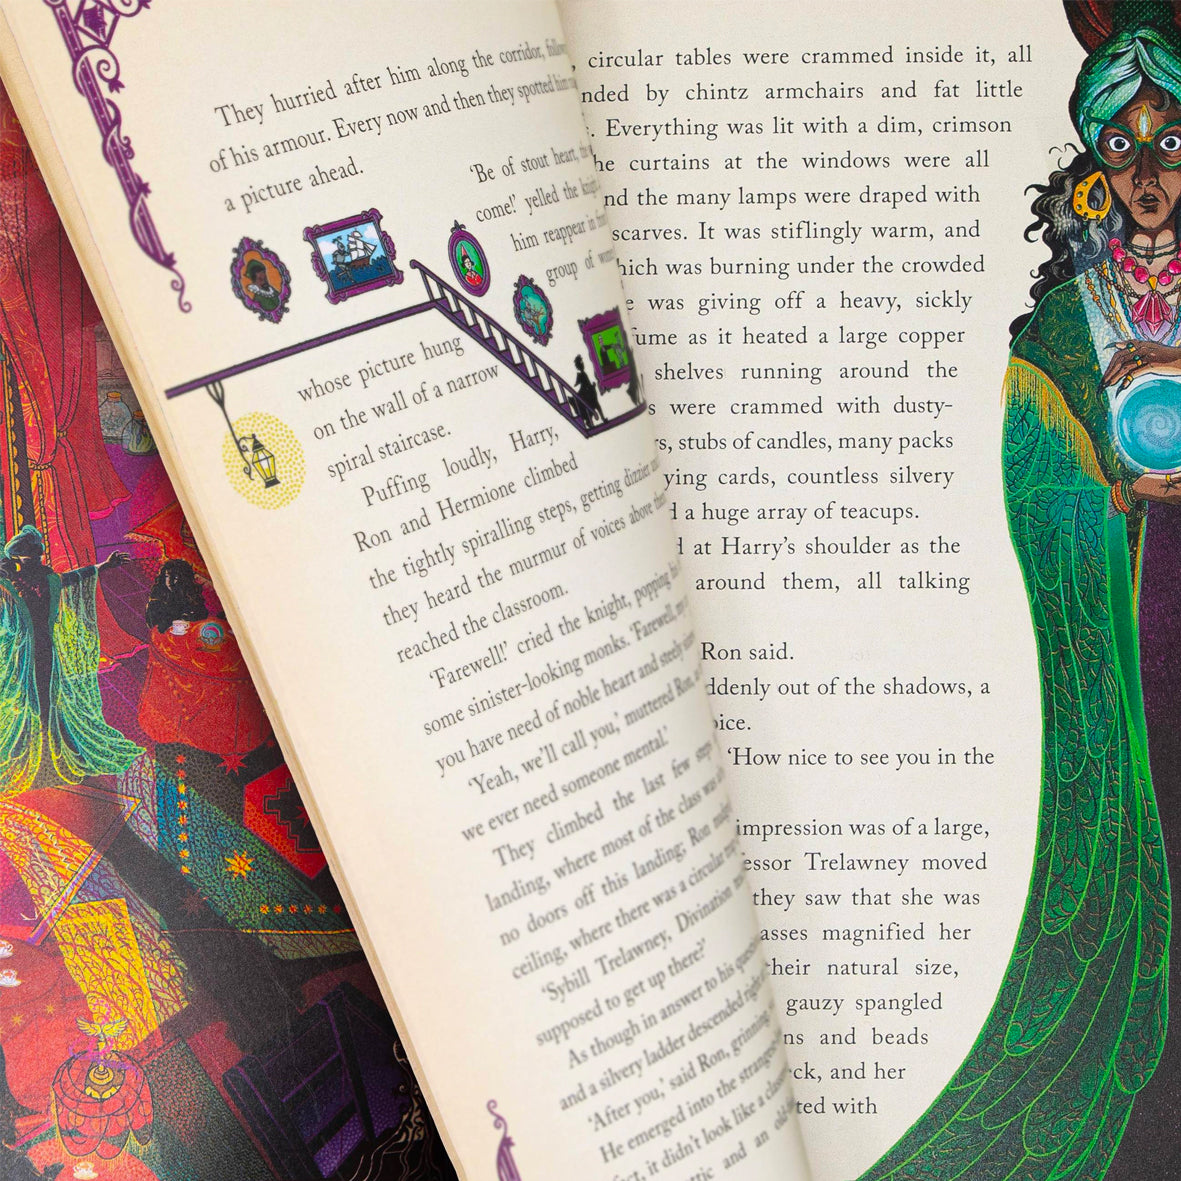 Harry Potter and the Prisoner of Azkaban - MinaLima Illustrated Edition